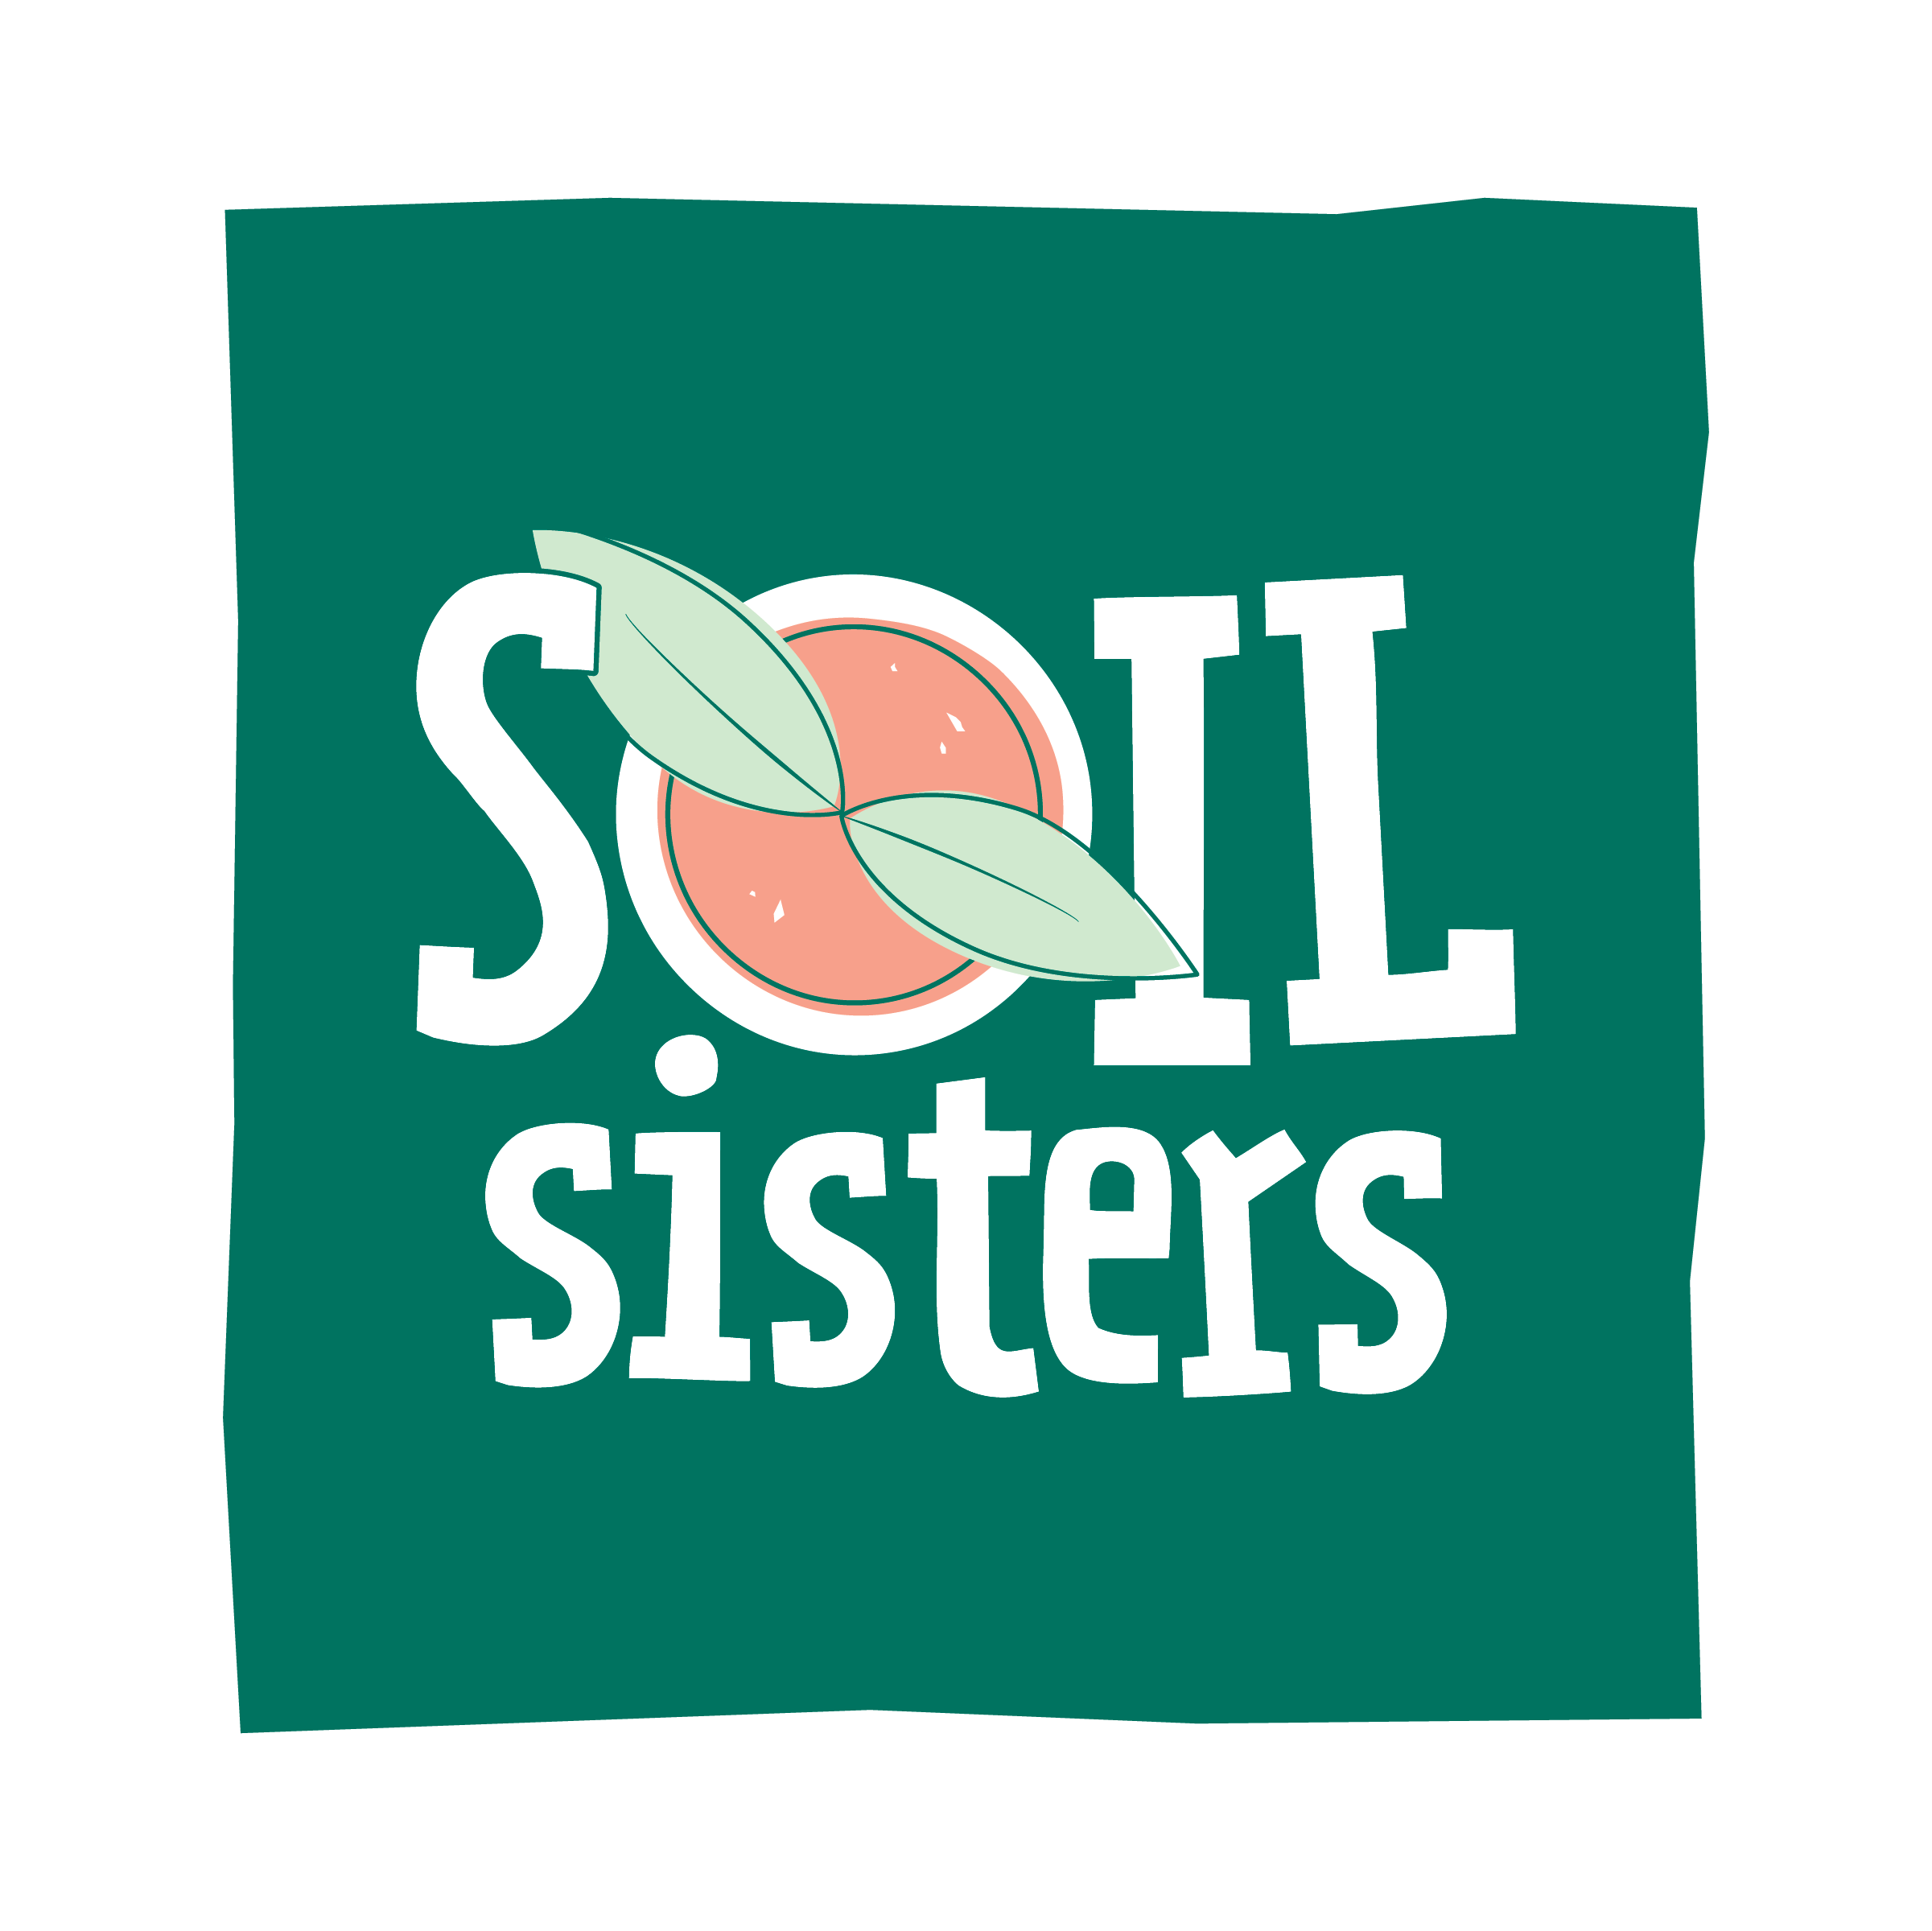 Soil sisters